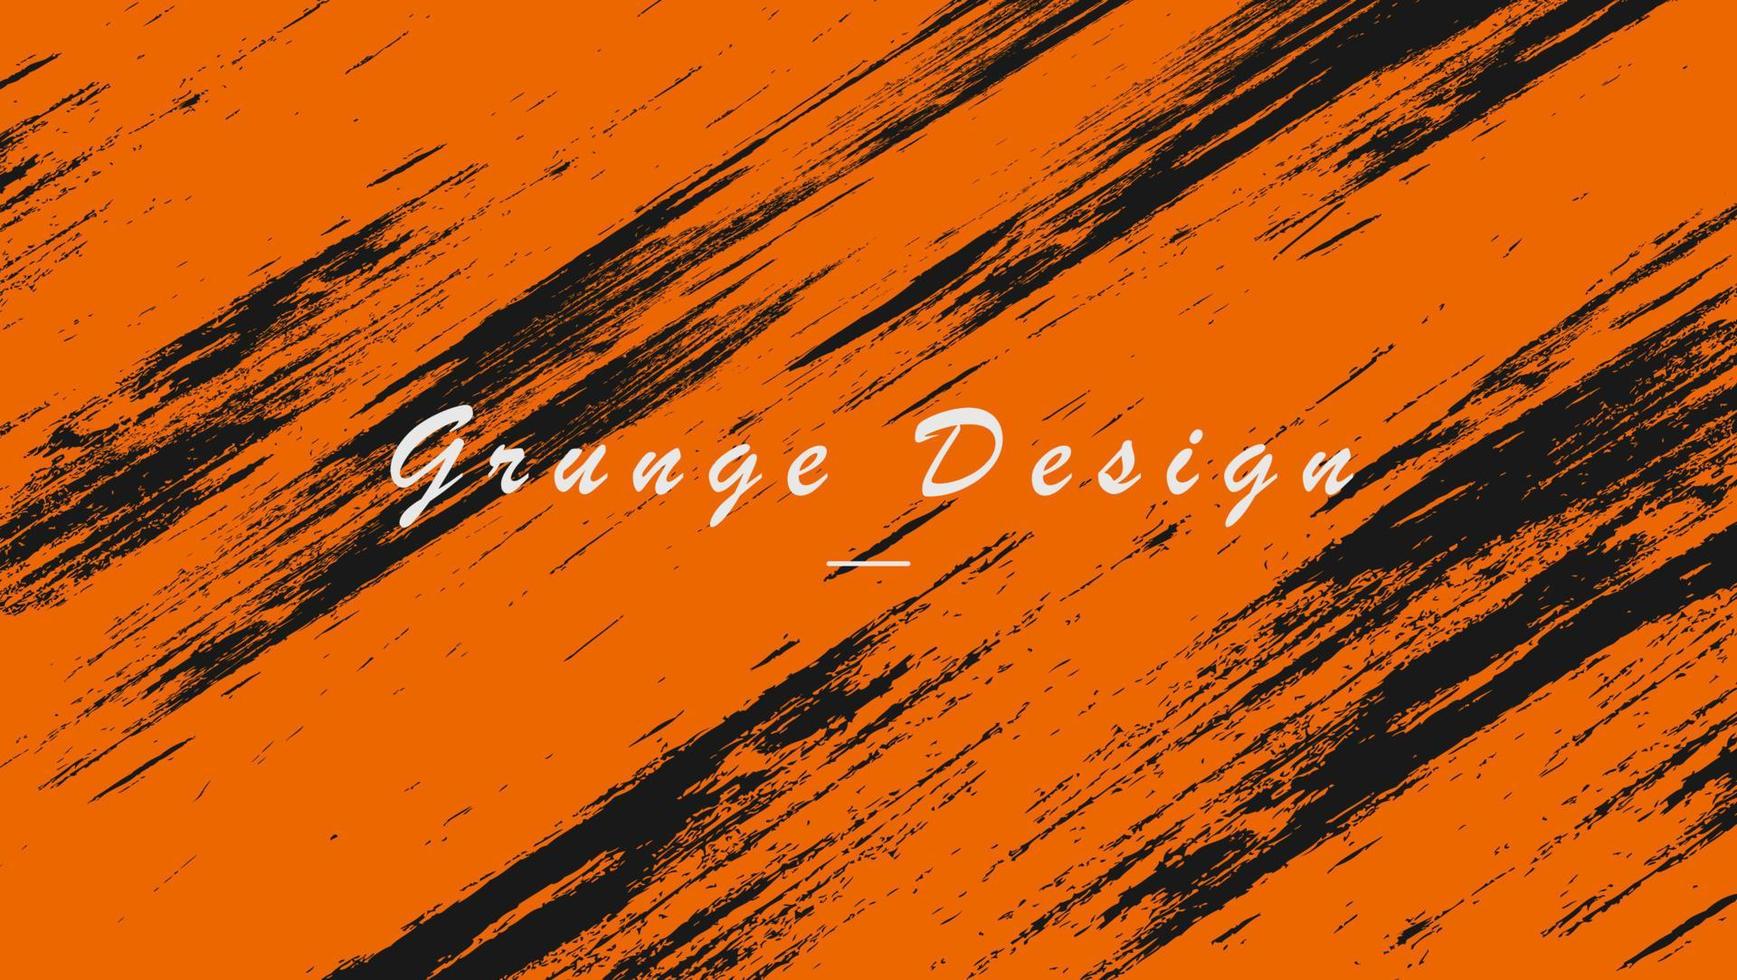 Abstract Orange Black Grunge Texture Background Design vector